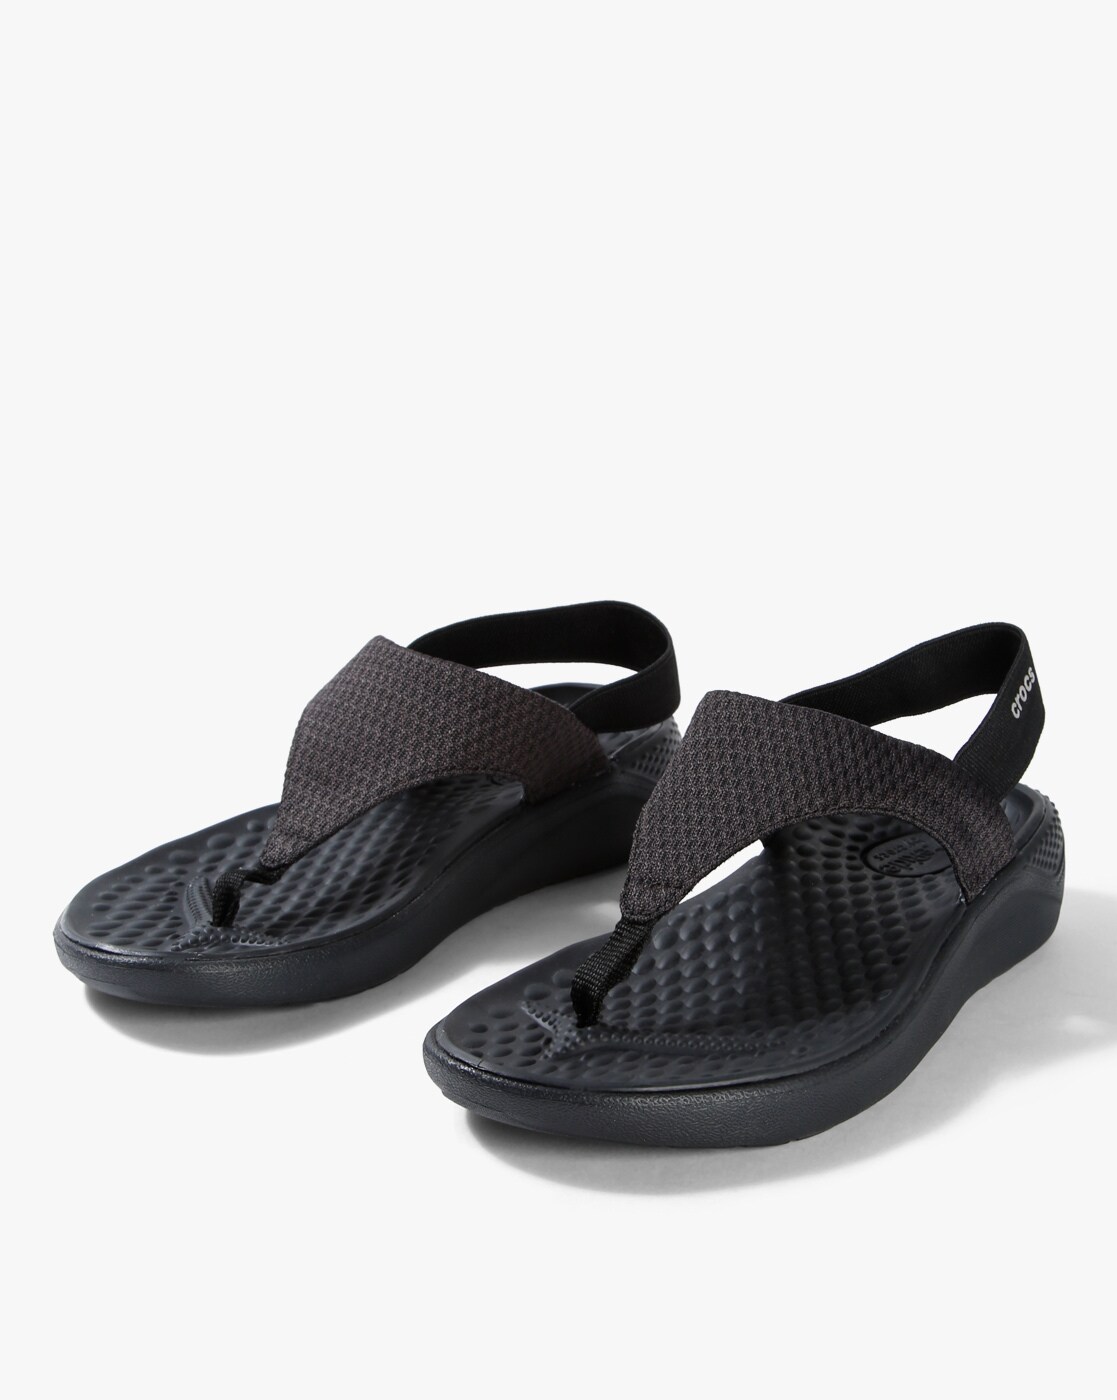 crocs black women's flip flops